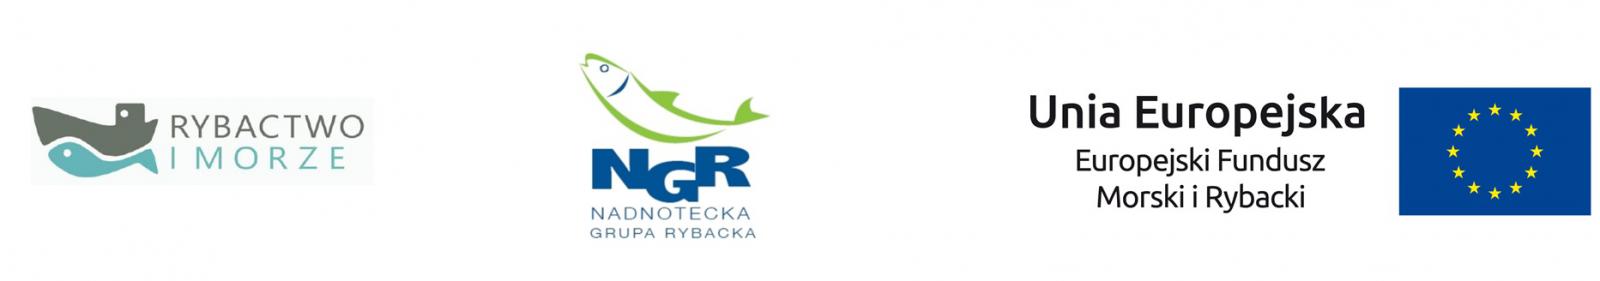 24.05 br. została podpisana umowa pomiędzy Województwem Wielkopolskim, a Gminą Czarnków na dofinansowanie zagospodarowania przestrzeni nad rzeką Noteć w miejscowości Góra nad Notecią.